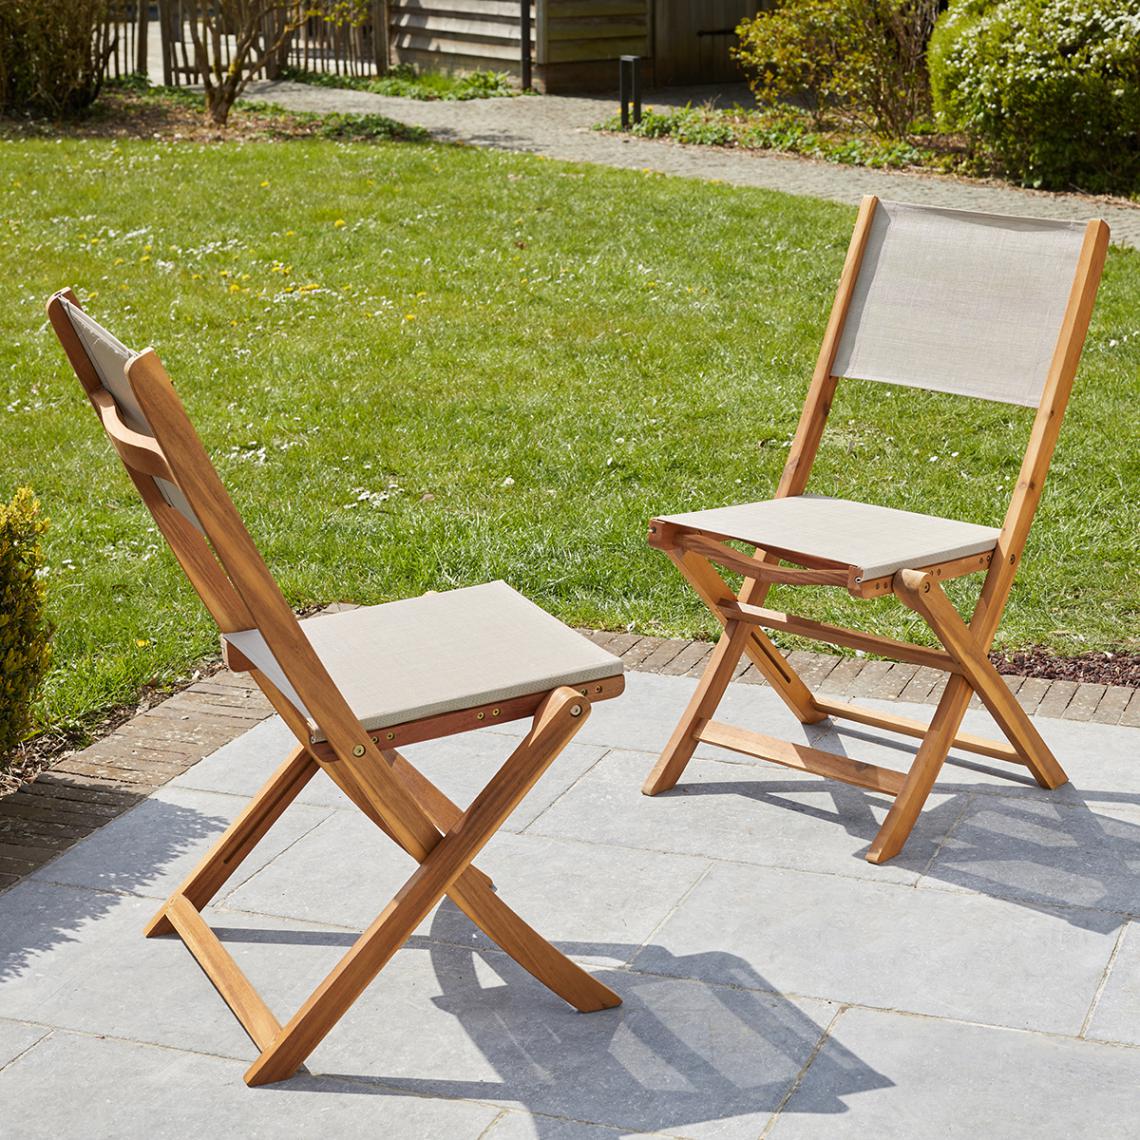 Wilsa - Lot de 2 chaise pliantes en bois d'acacia et textilène gris - Chaises de jardin